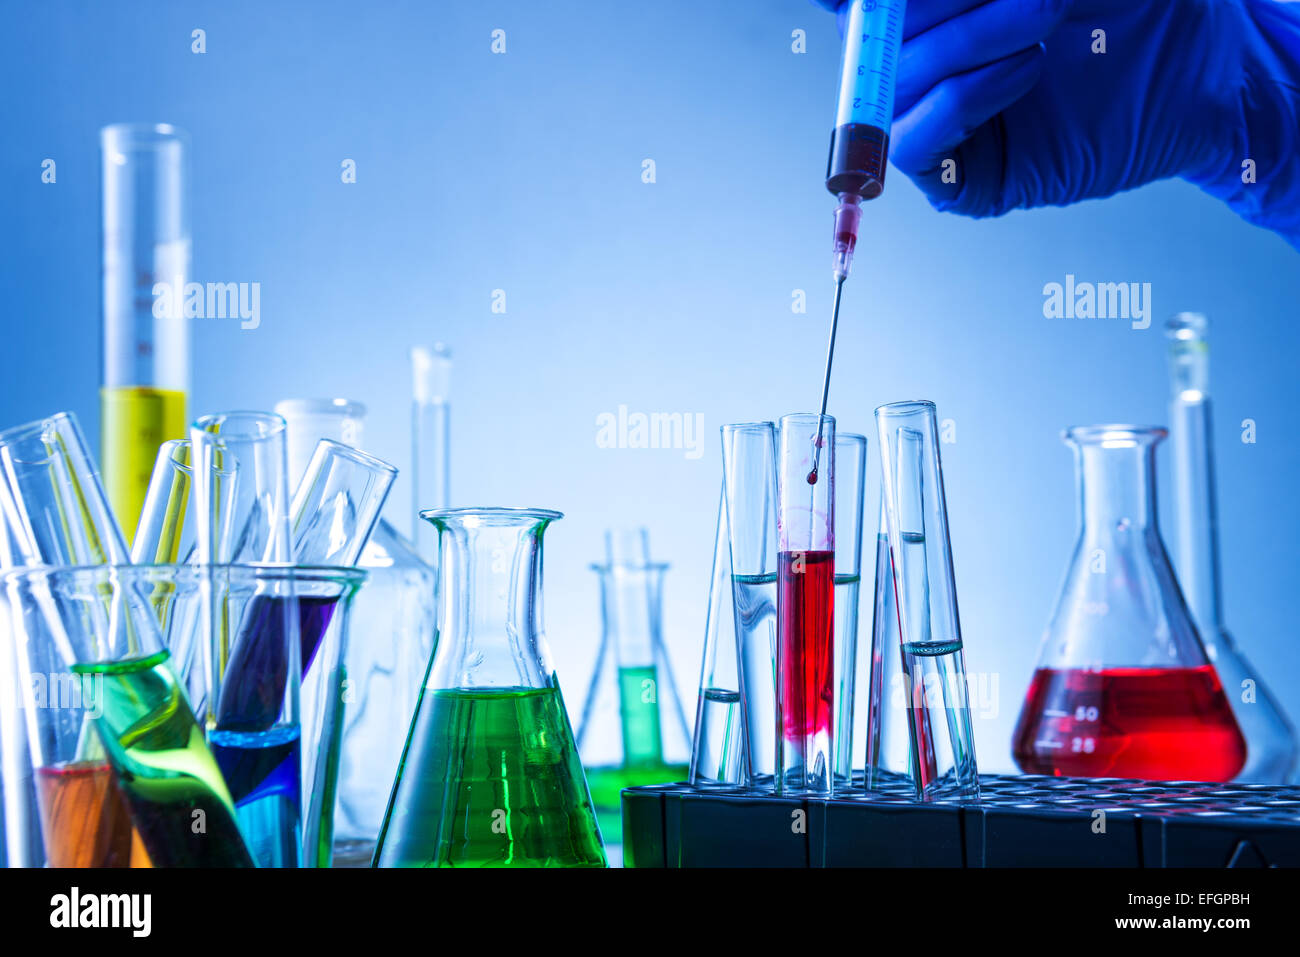 L'équipement de laboratoire, beaucoup de verre remplis de liquides colorés et d'injection à la main Banque D'Images